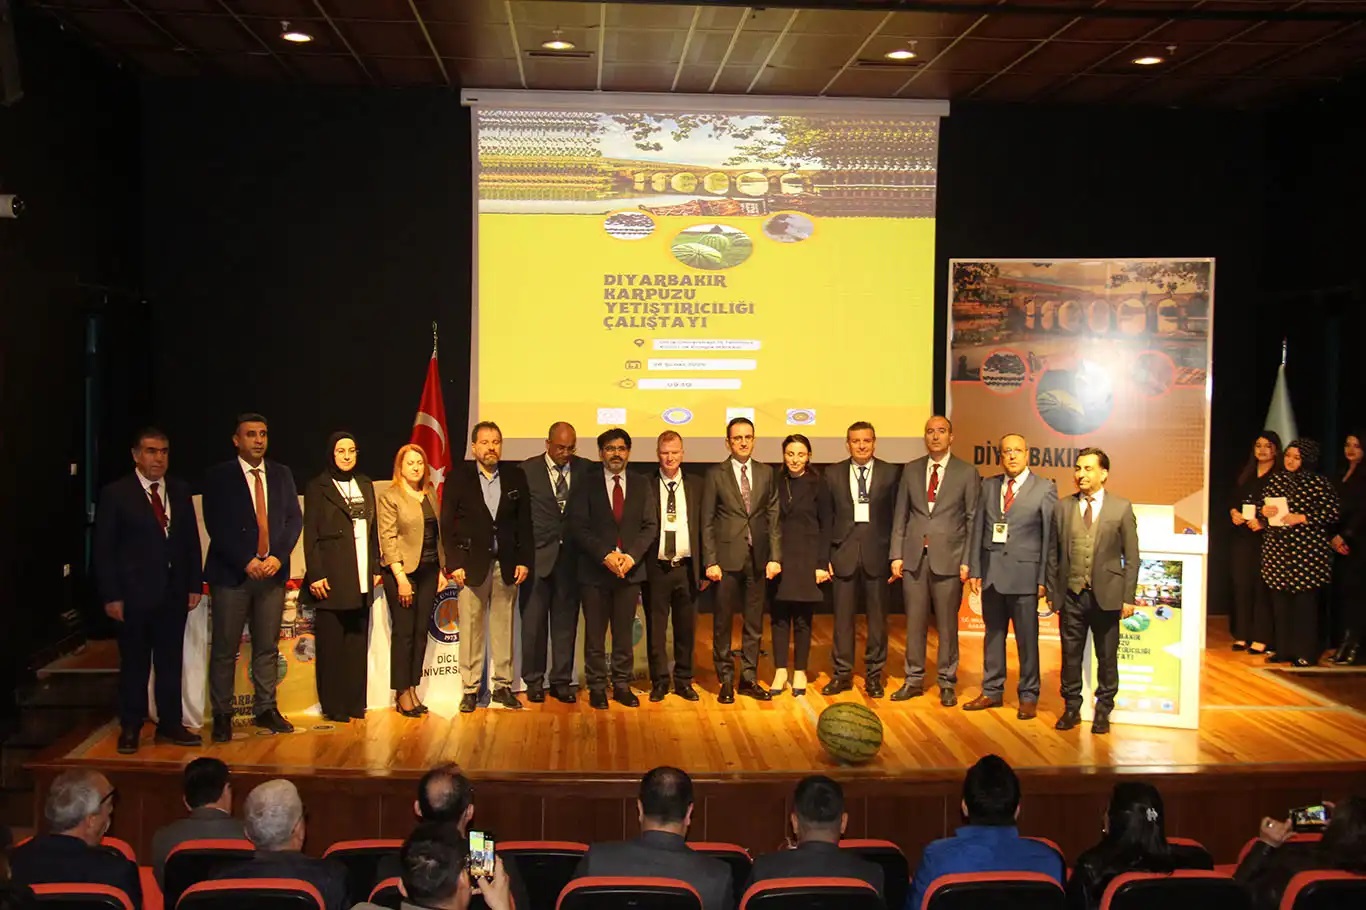 Diyarbakır’da karpuz yetiştiriciliği çalıştayı yapıldı